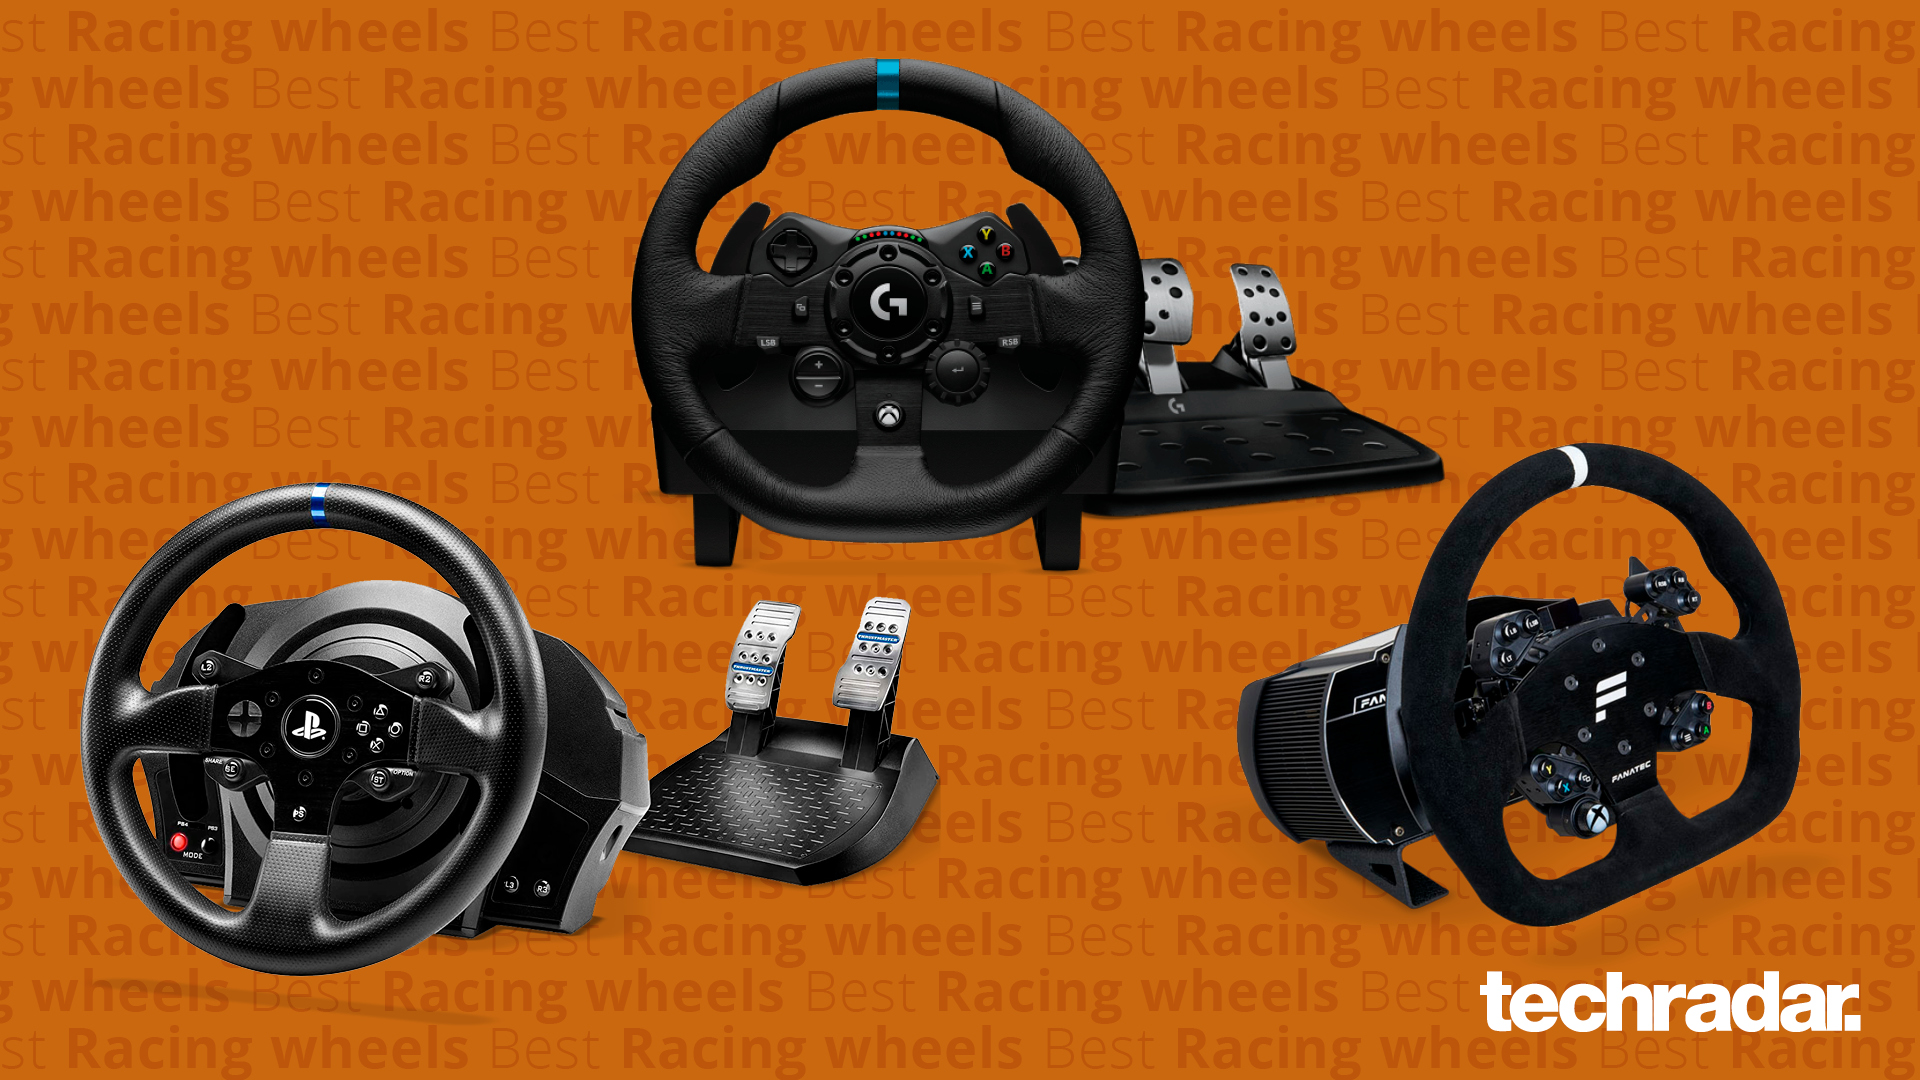 Uitgaven Groene bonen vergroting Best racing wheels | TechRadar